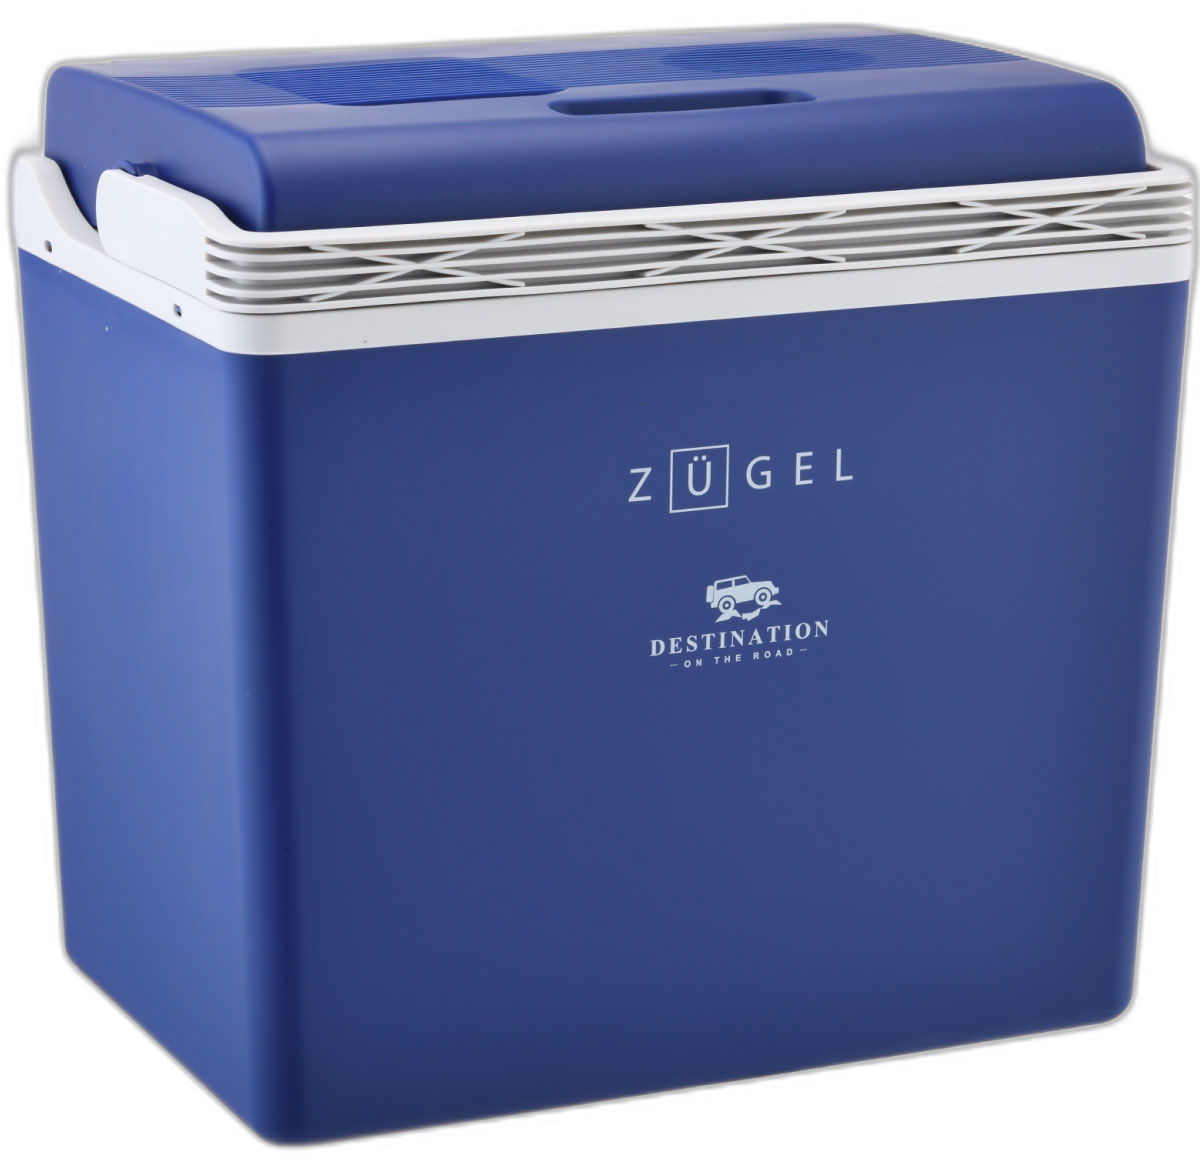 Купить автомобильный холодильник ZUGEL ZCR30 синий, цены на Мегамаркет | Артикул: 600017006837